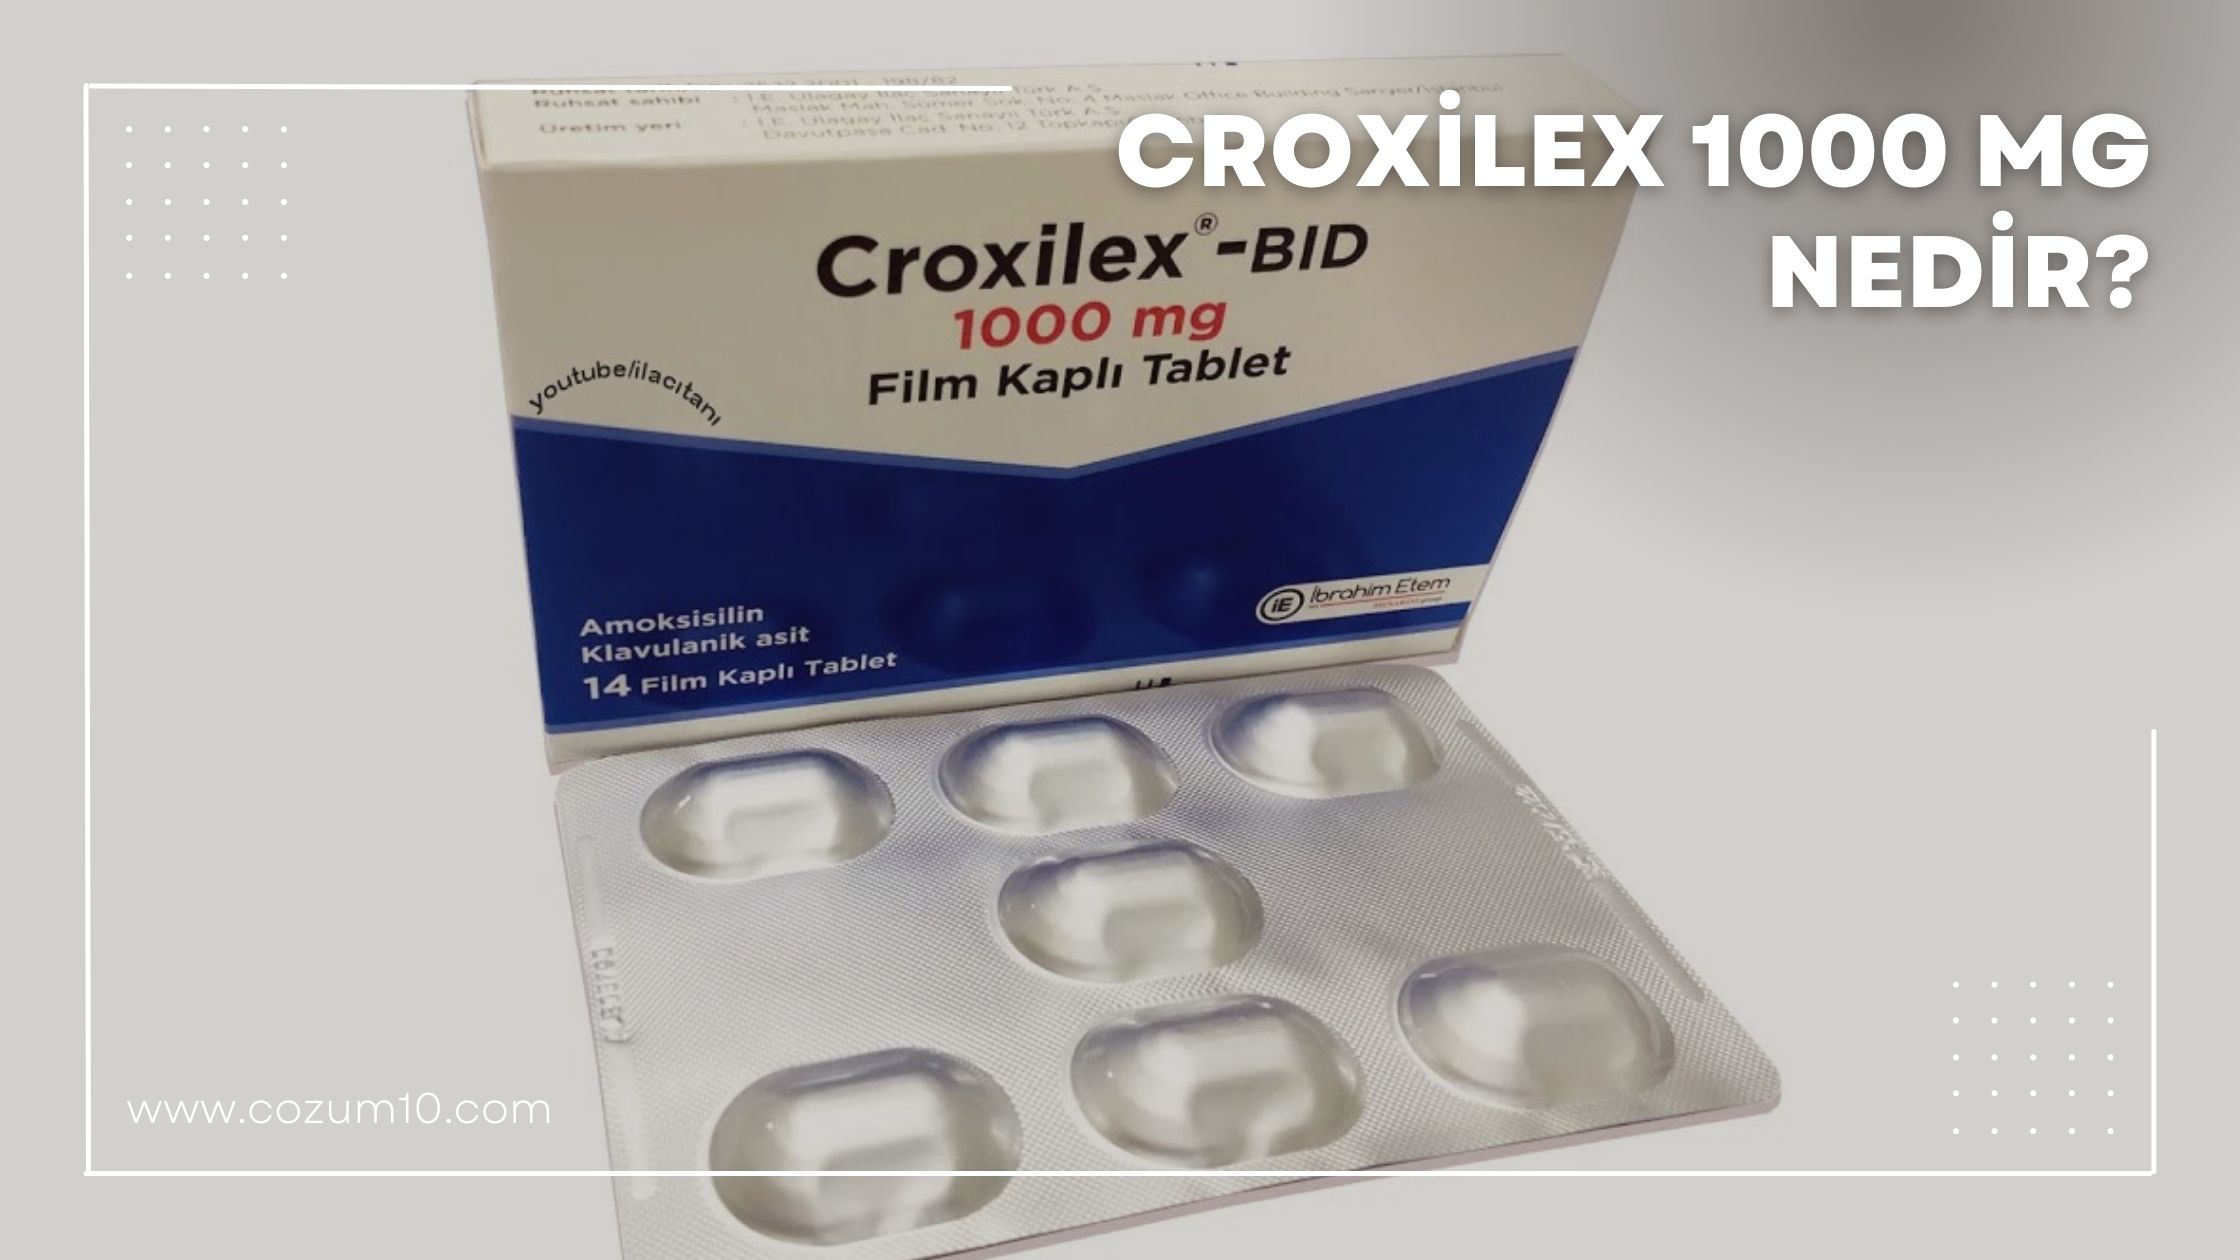 Croxilex 1000 mg Nedir?